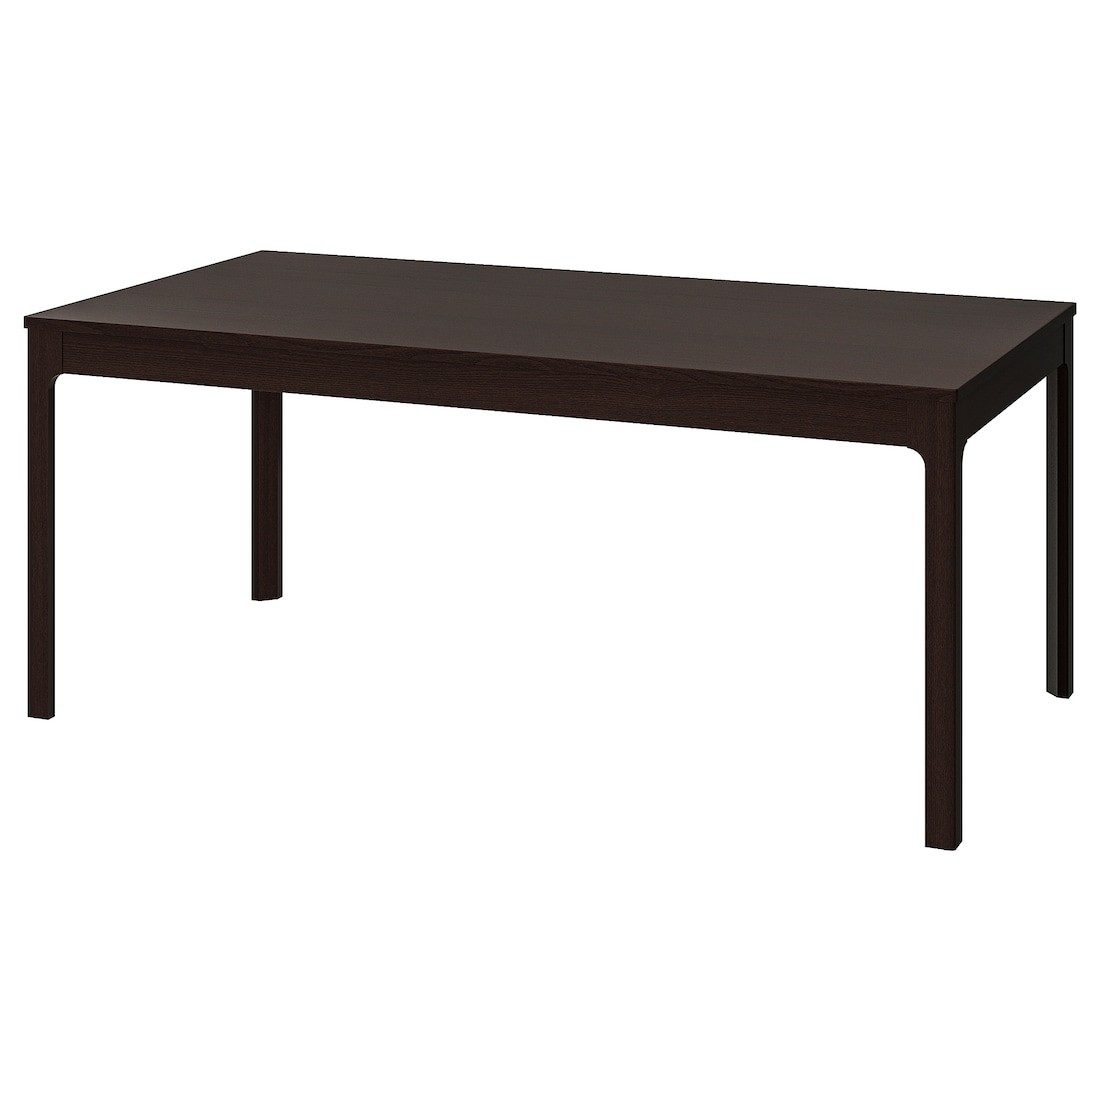 EKEDALEN ЕКЕДАЛЕН Розсувний стіл, темно-коричневий, 180/240x90 cм